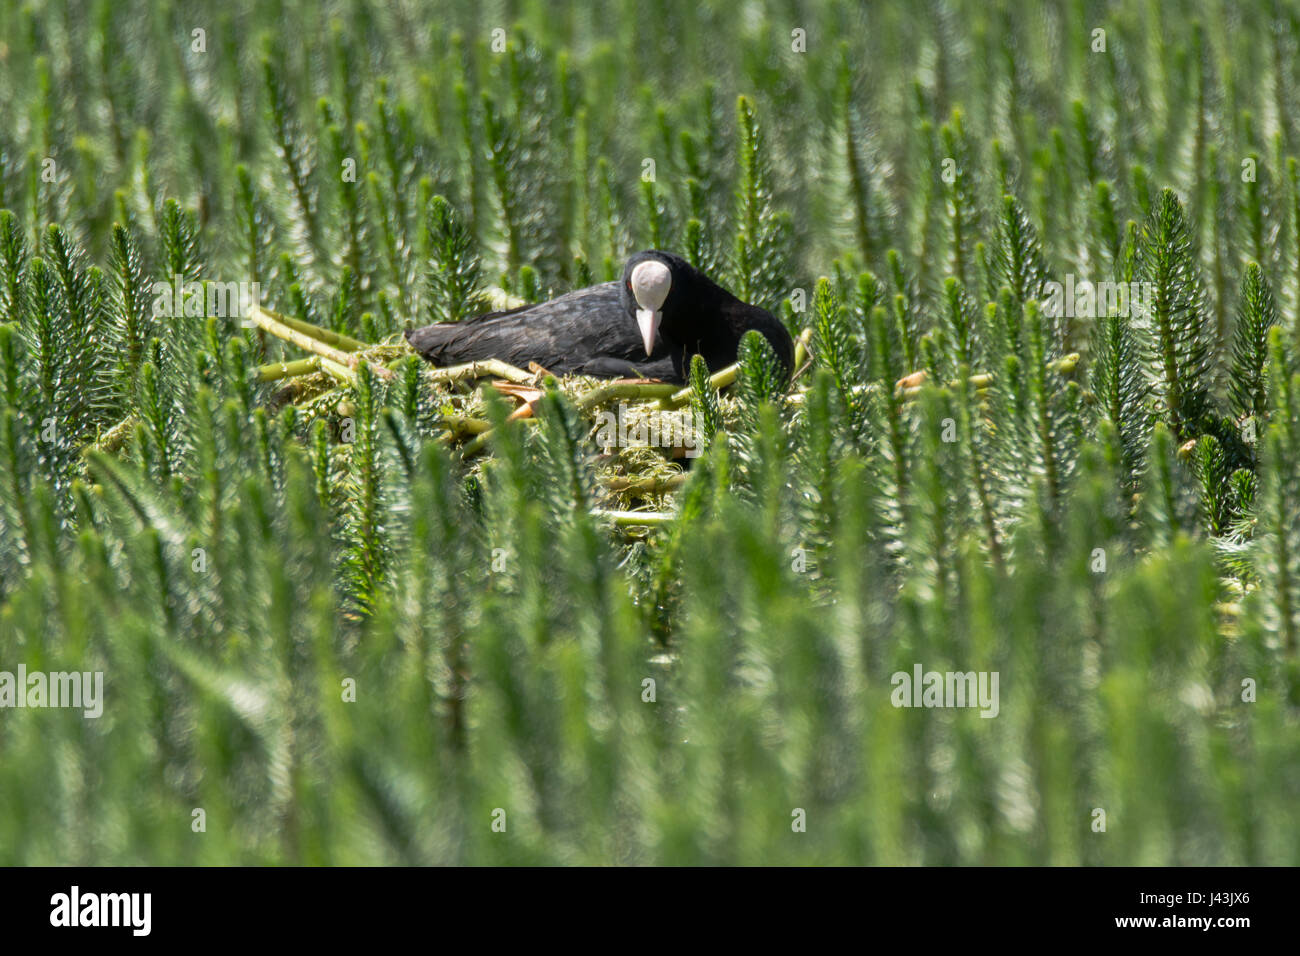 La folaga (fulica atra) seduto sul nido tra vegetazione acquatica. Acqua nera uccello della famiglia Rallidae sul nido costruito di materiale vegetale Foto Stock